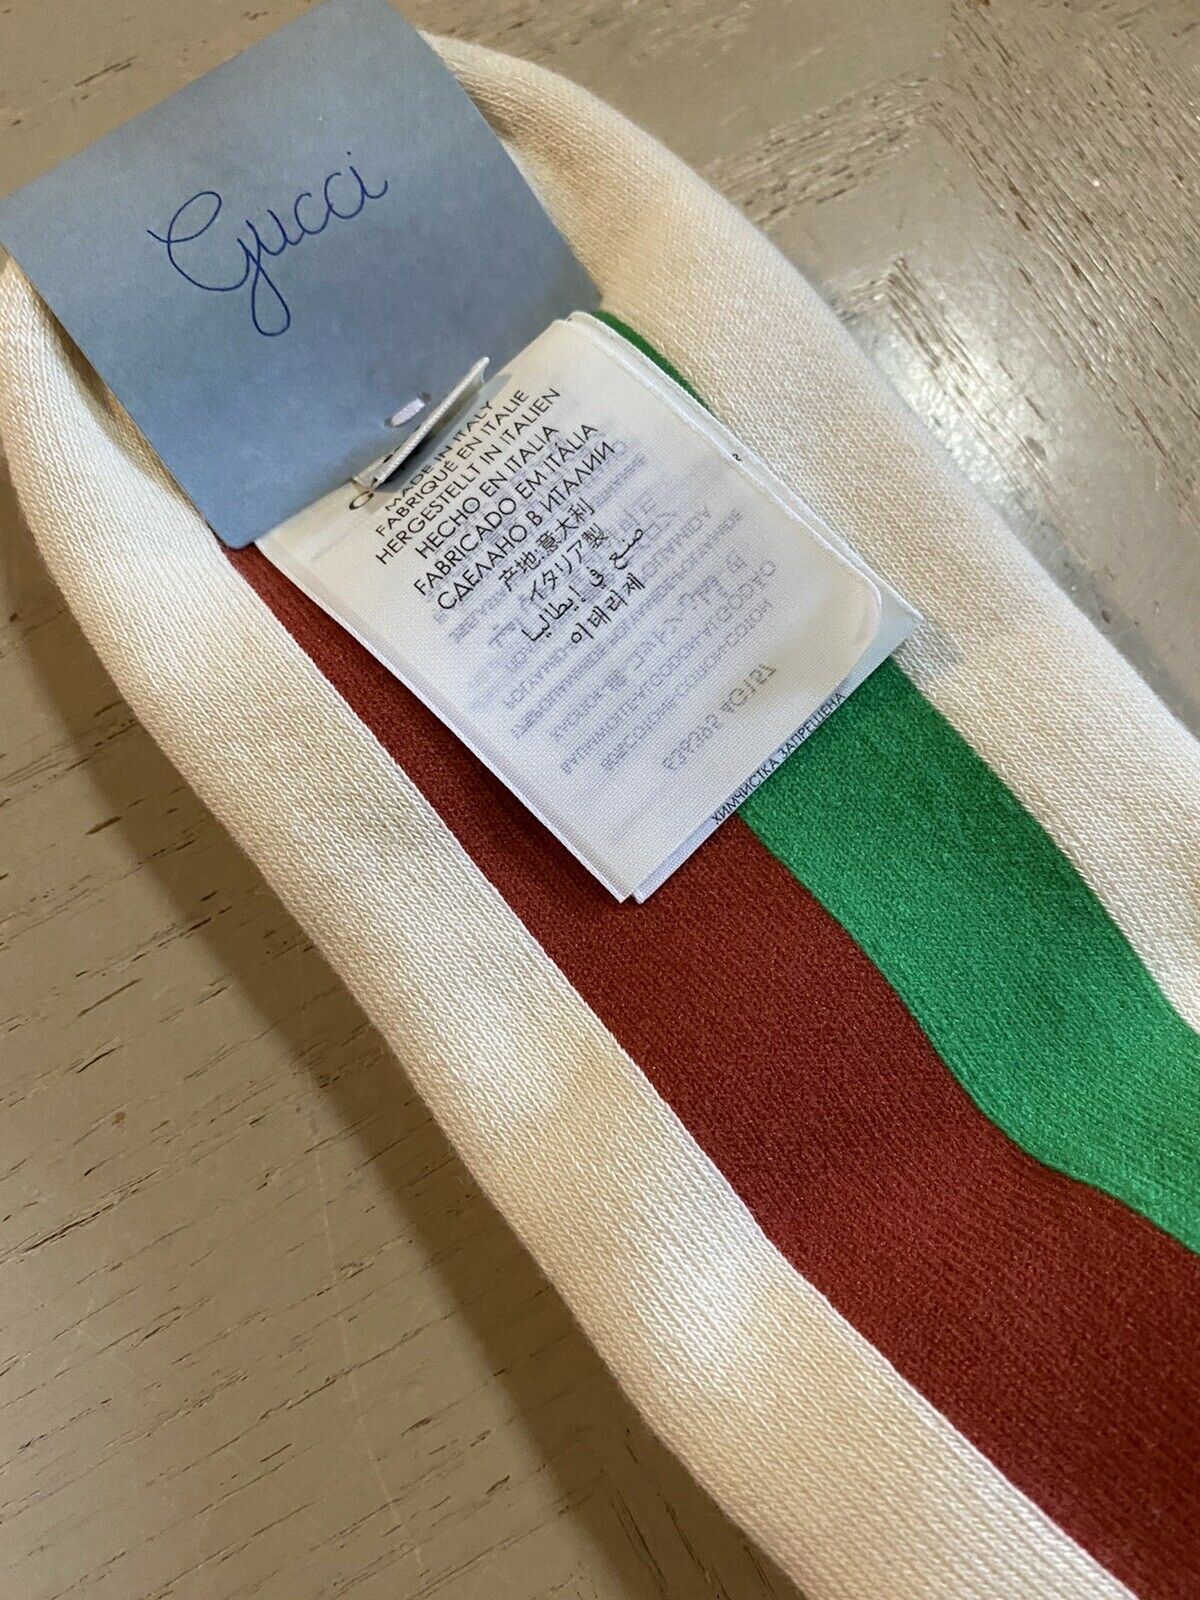 Neu mit Etikett: Gucci NOT FAKE Socken mit Streifen in Rot/Grün/Elfenbein, Größe M, Italien